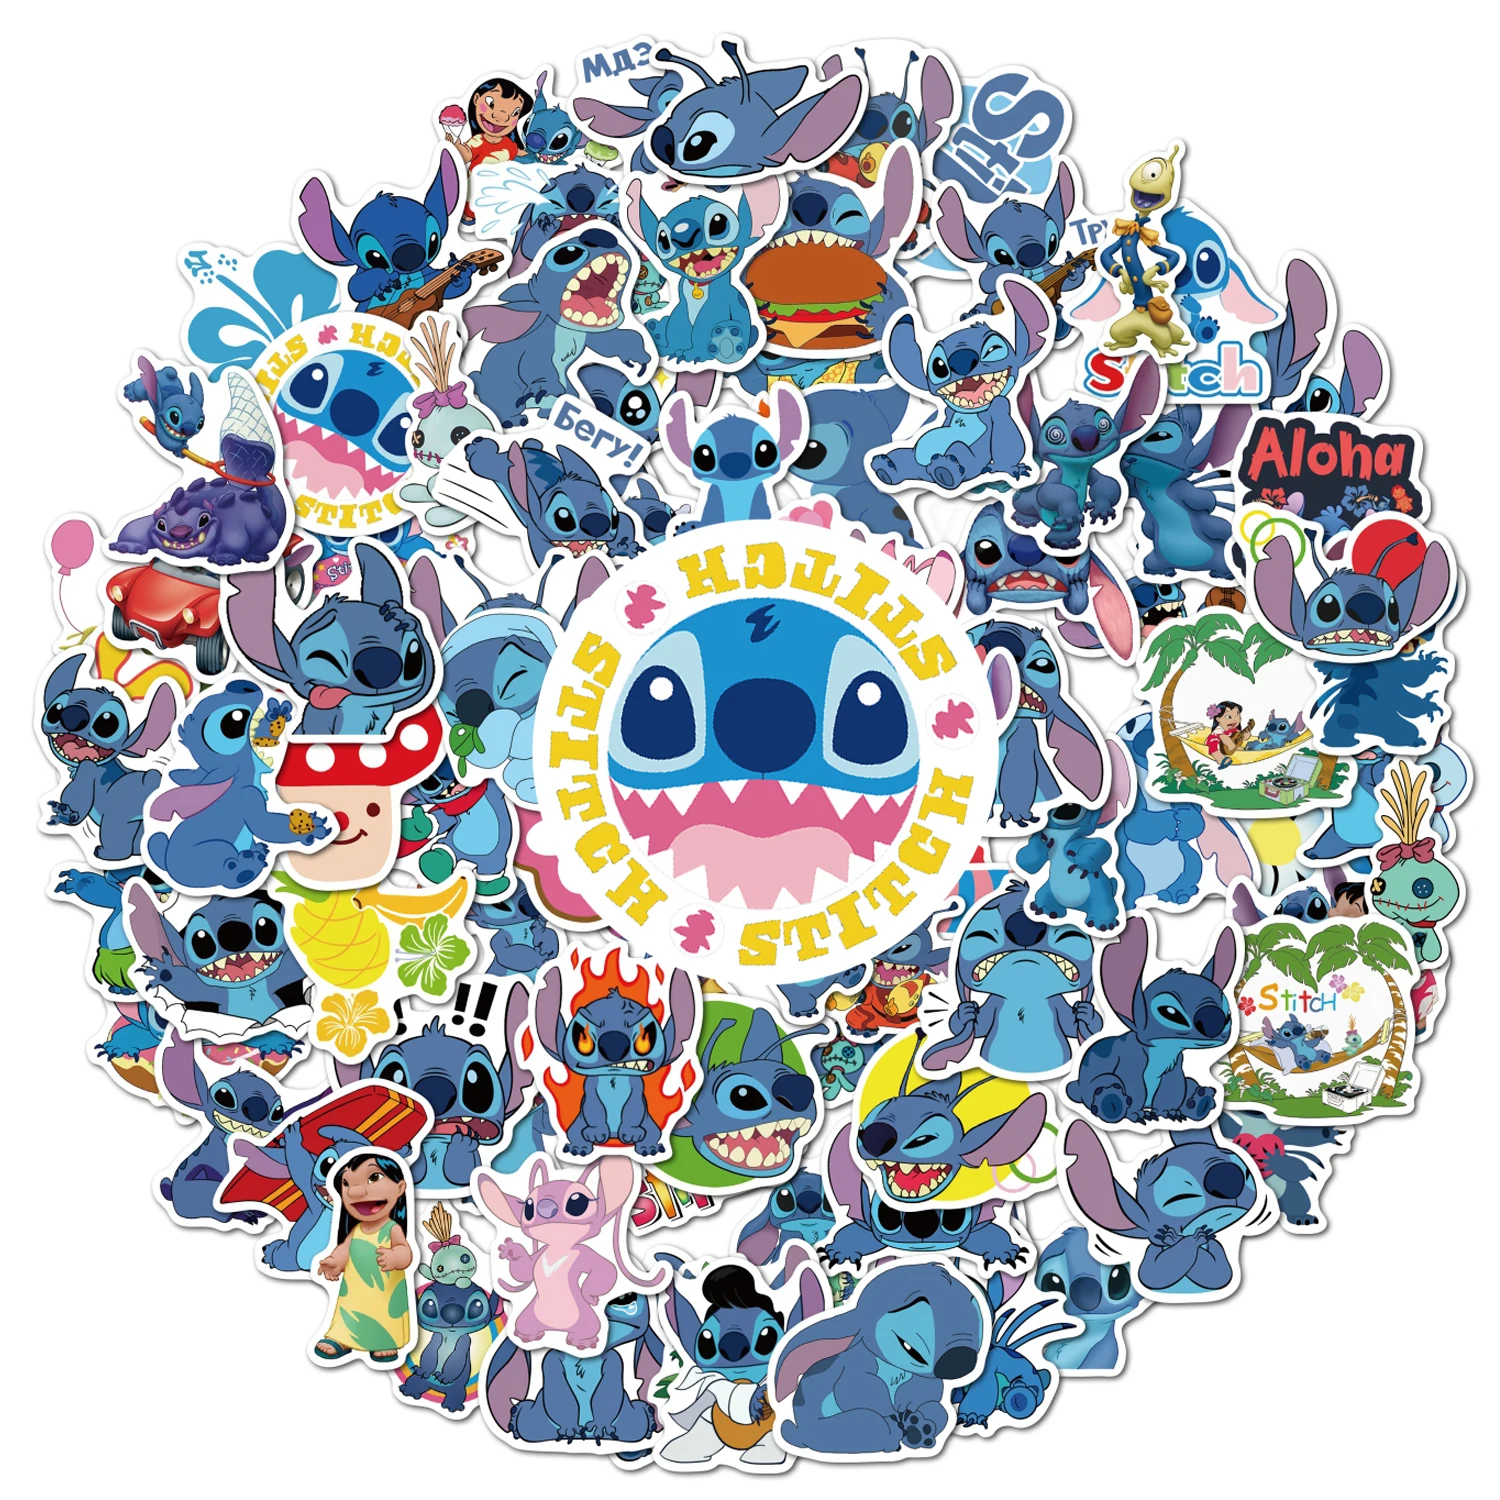  Classic Disney Stitch Sticker Set - Bundle with 72